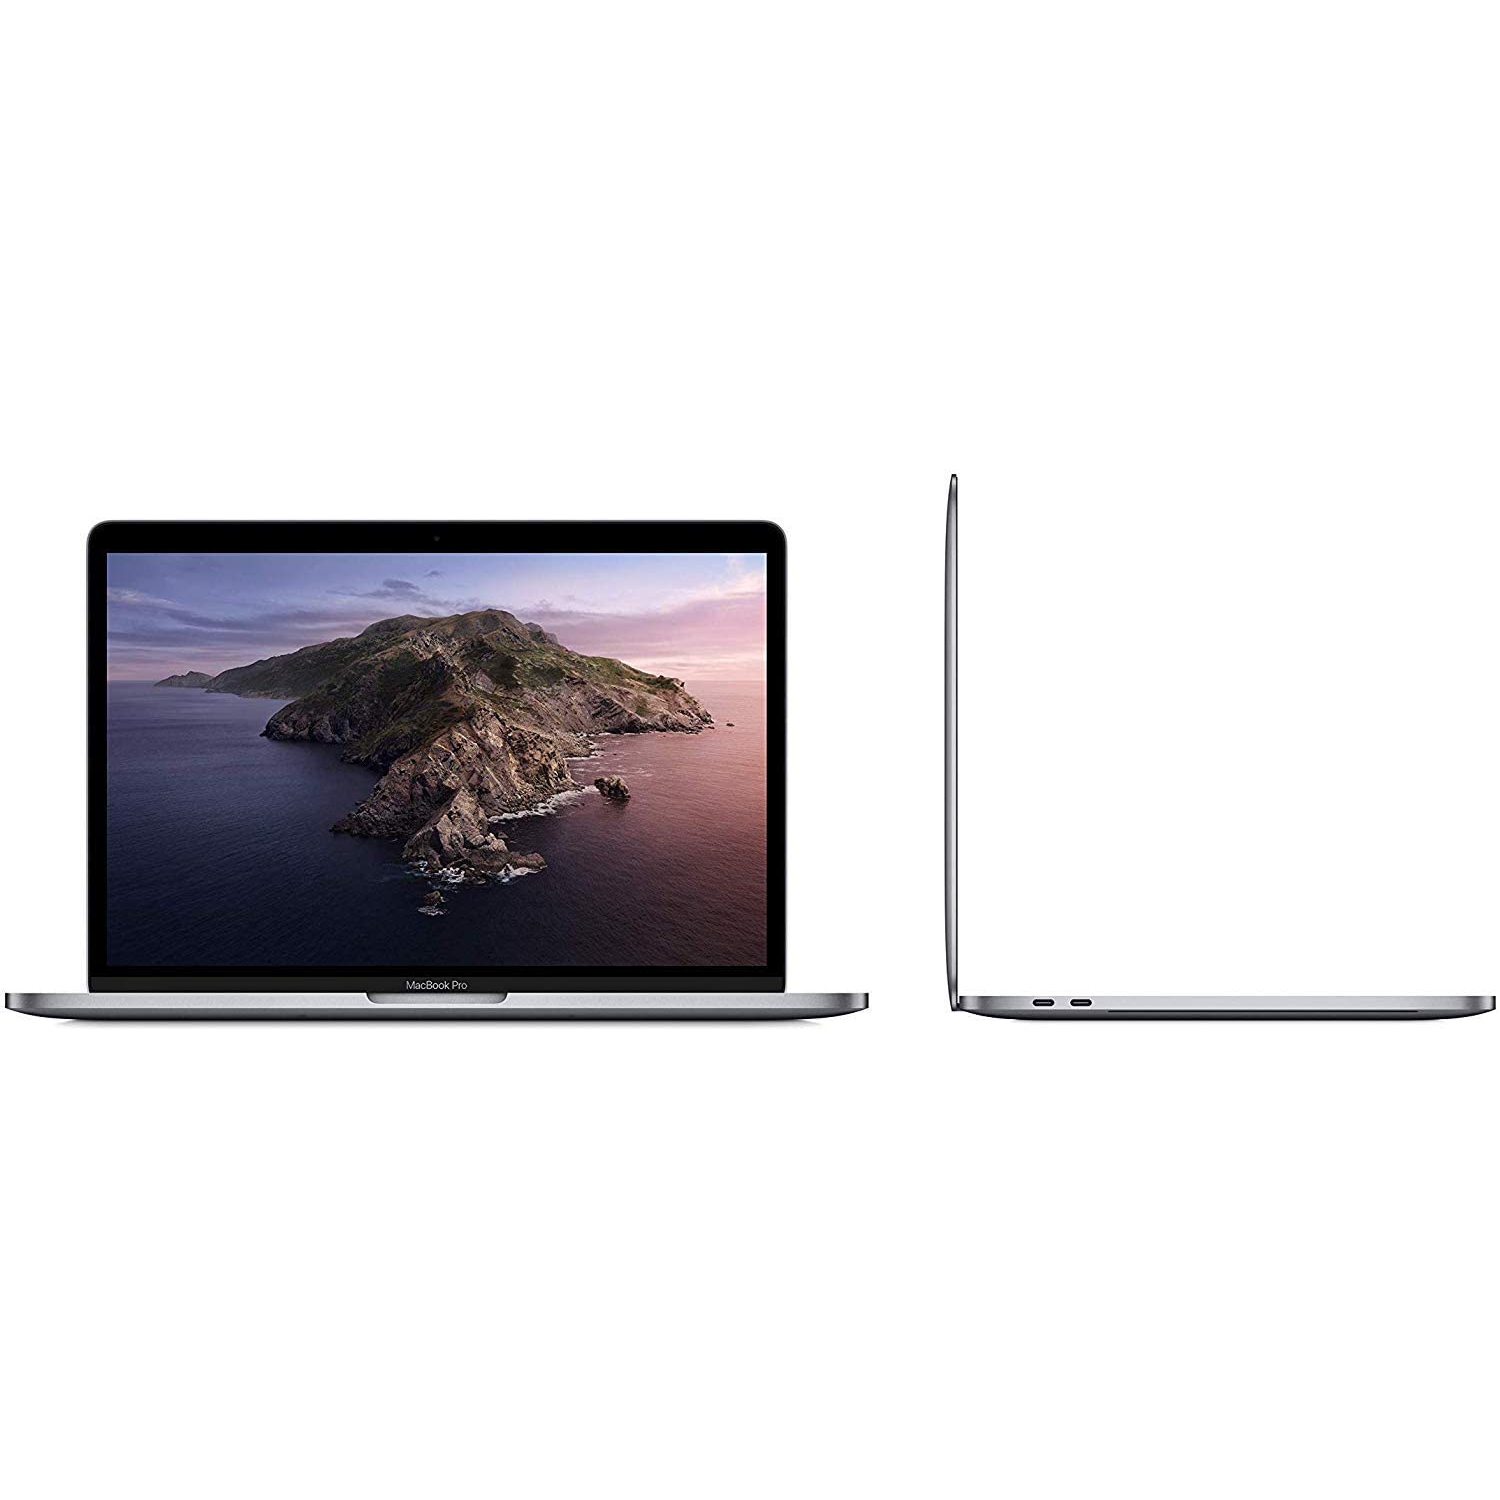 Refurbished (Excellent) - Apple Macbook Pro 13.3